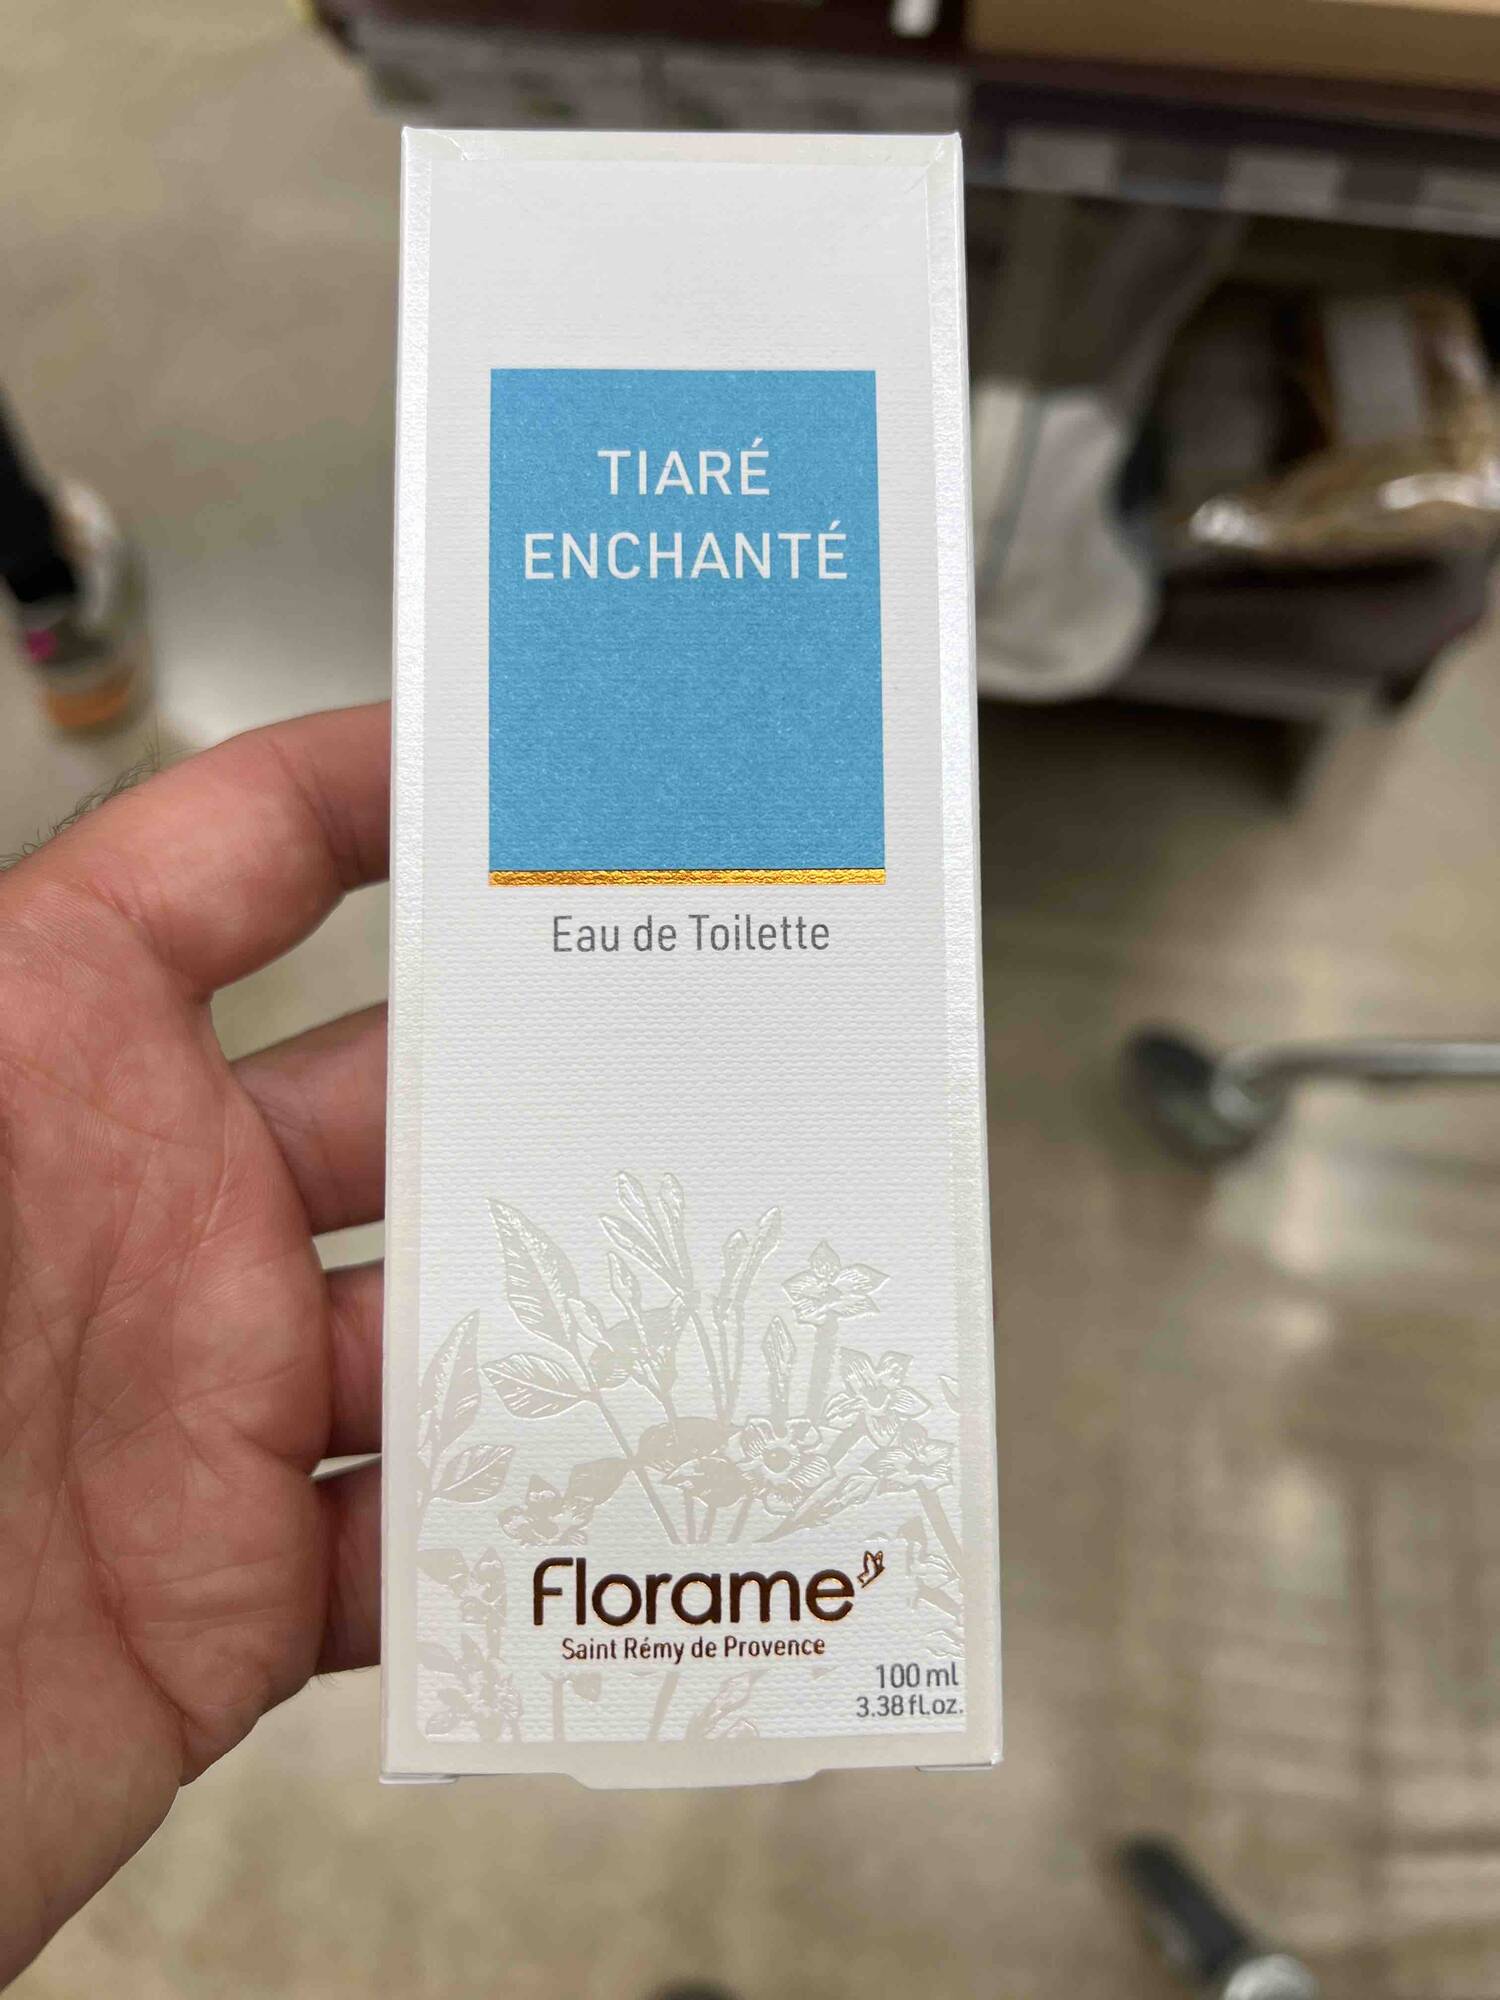 FLORAME - Tiaré enchanté - Eau de toilette